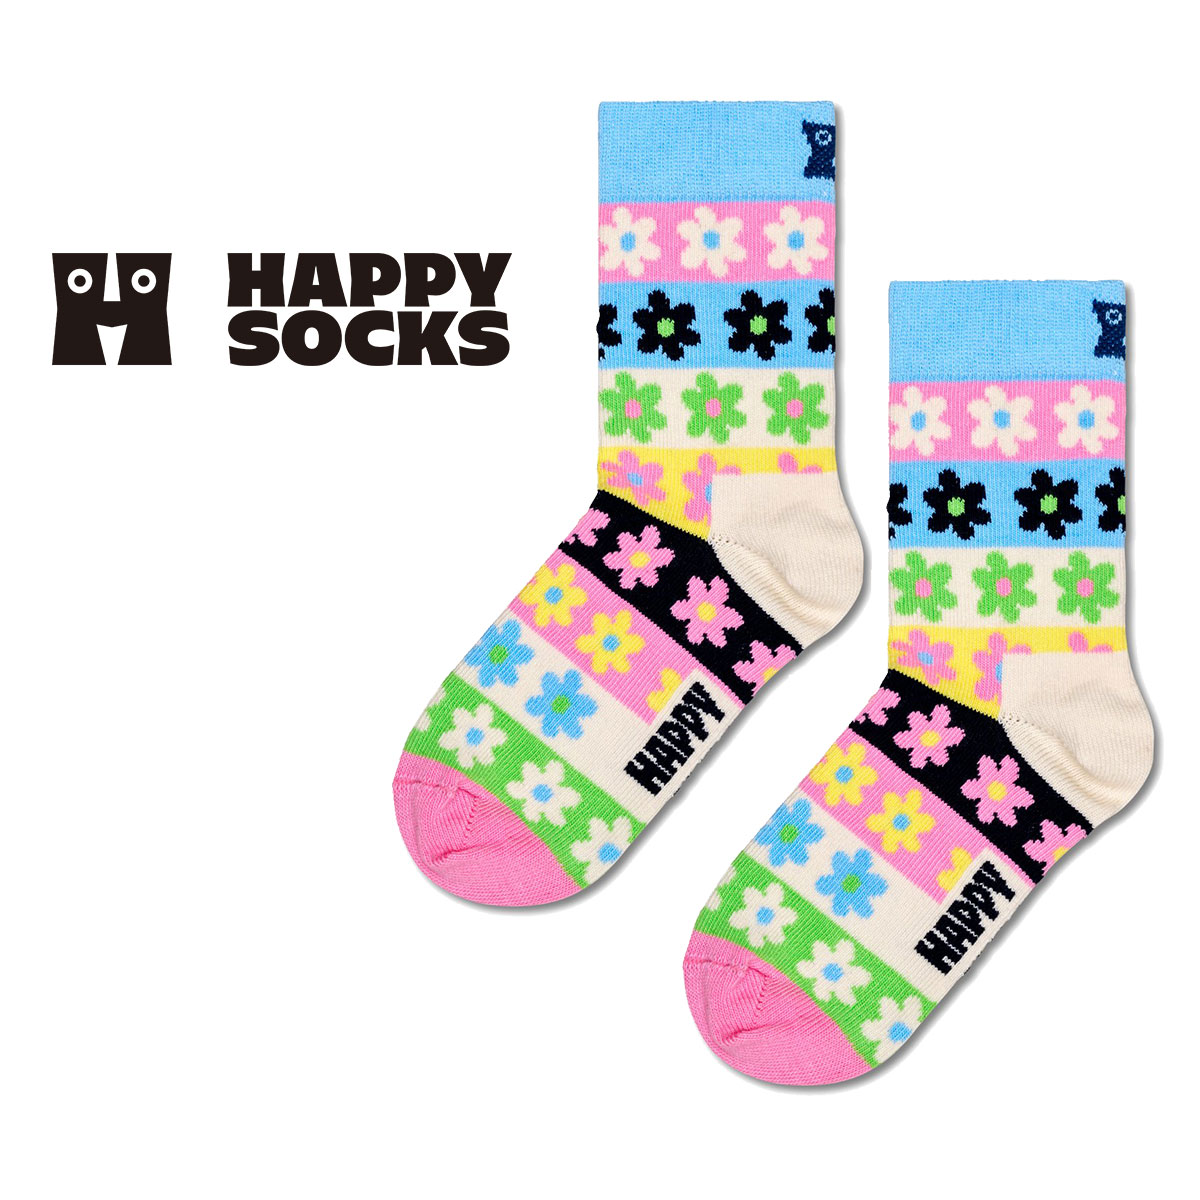 【24SS】Happy Socks ハッピーソックス Kids Flower Stripe ( フラワーストライプ ) 子供 クルー丈 綿混 ソックス KIDS ジュニア キッズ 12240030